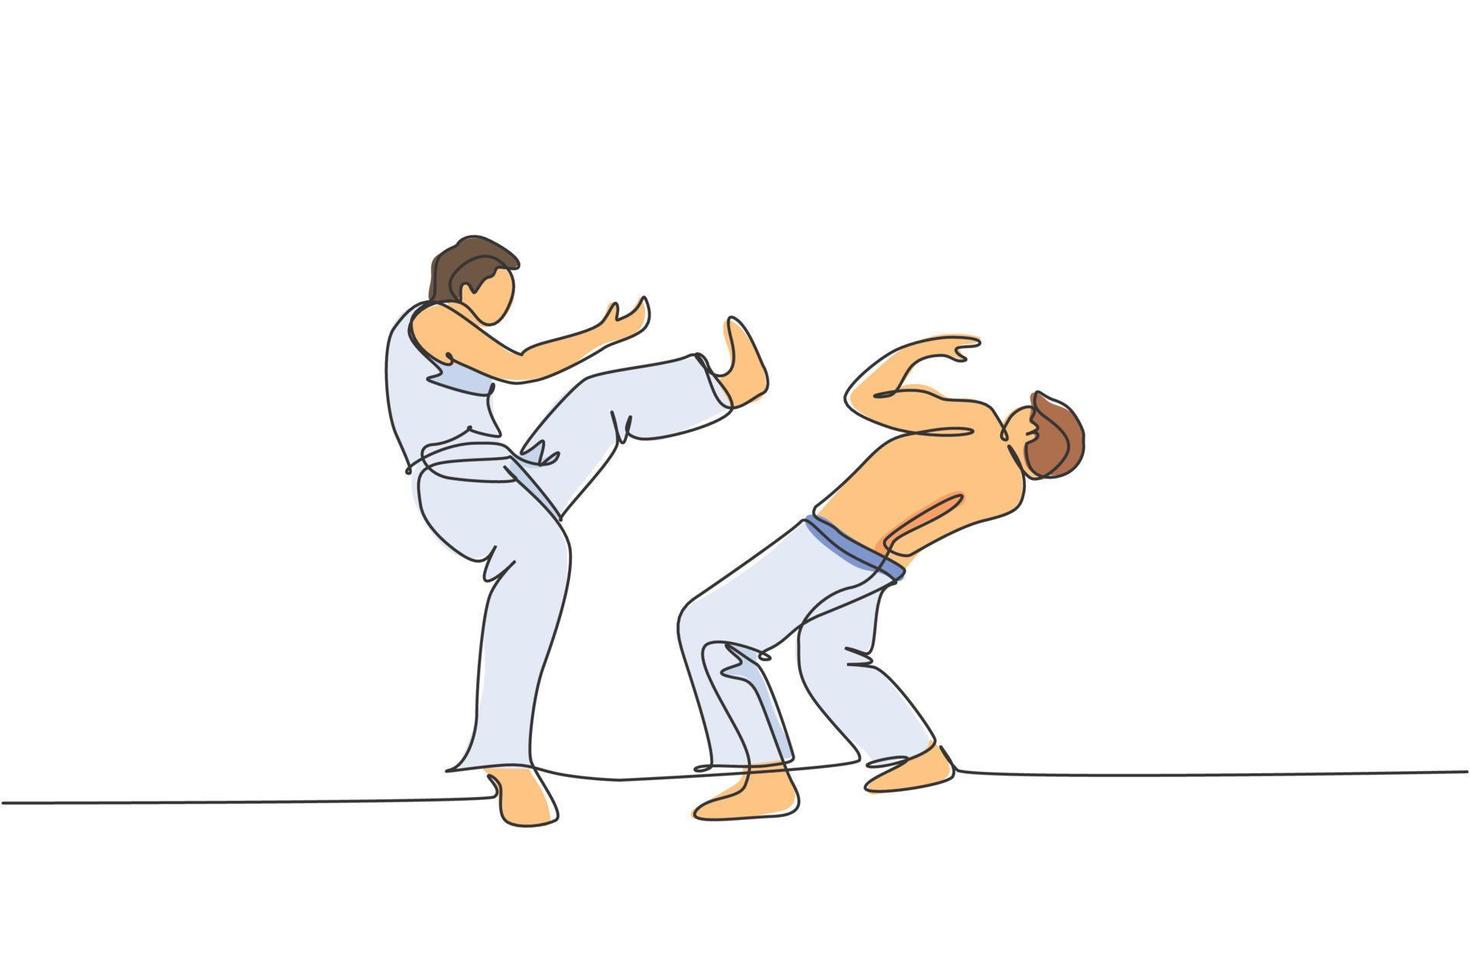 een enkele lijntekening van twee jonge energetische man capoeira dansers voeren dansende strijd vectorillustratie uit. traditionele vechtsport levensstijl sport concept. modern ononderbroken lijntekeningontwerp vector